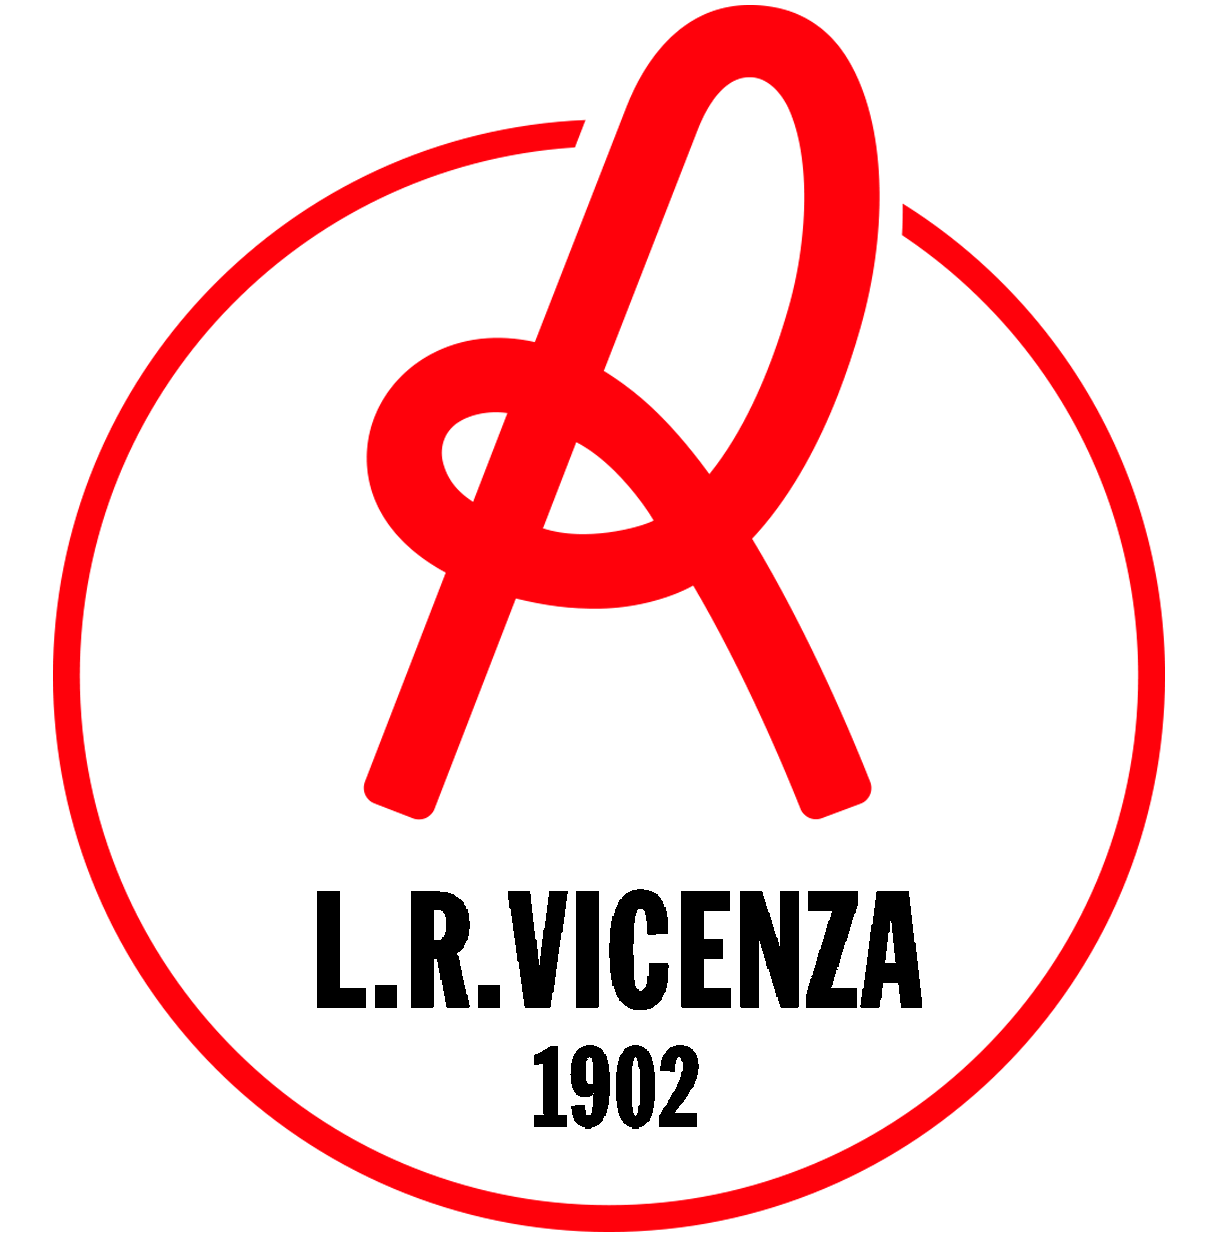 Vicenza Logo - File:Logo LR Vicenza Virtus (2018).png